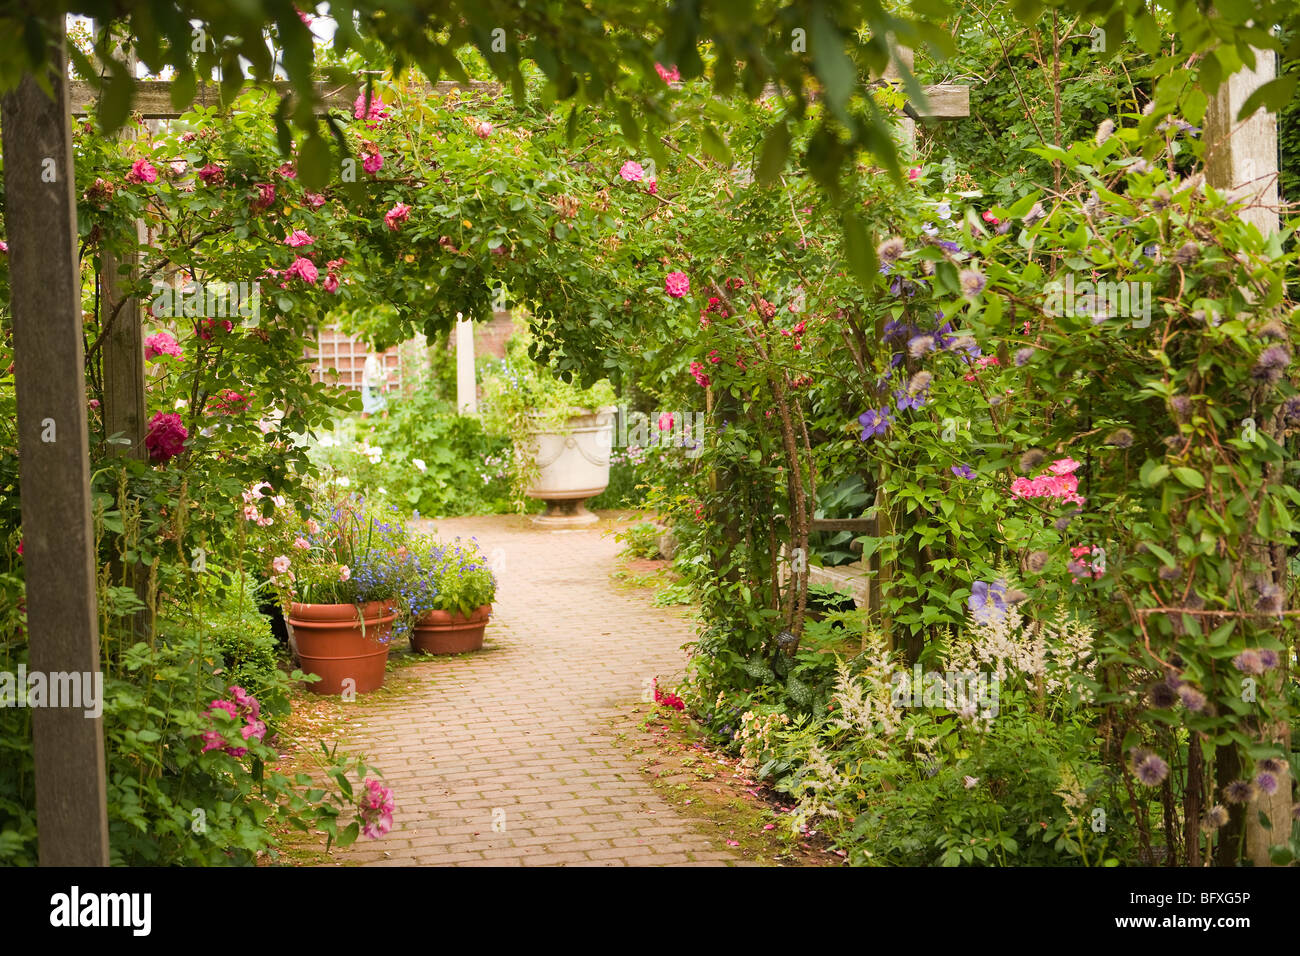 Englischer Garten, Chicago Botanic Garden, Chicago, Illinois, Vereinigte Staaten von Amerika Stockfoto